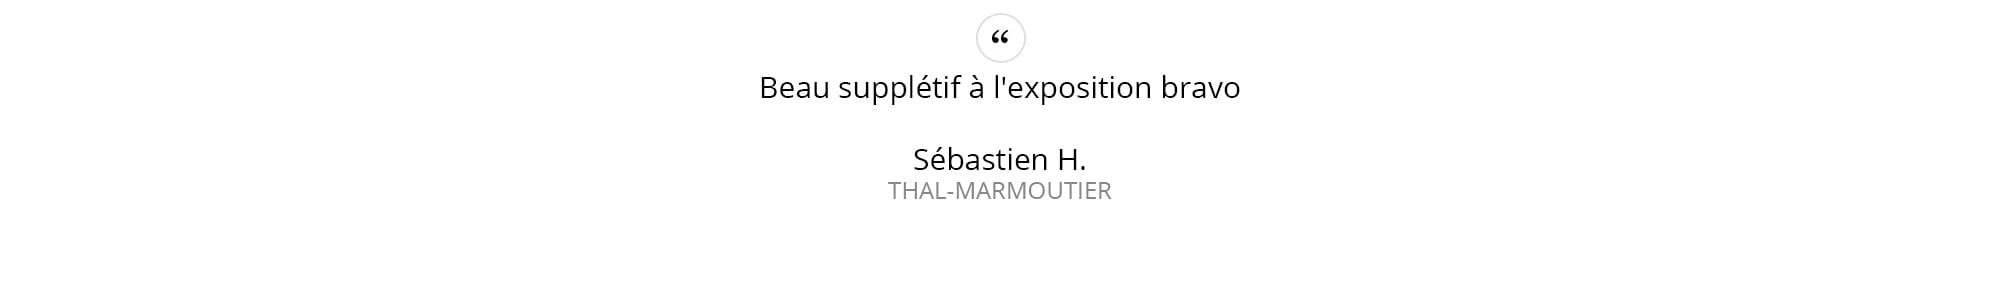 Sébastien-H.---THAL-MARMOUTIER